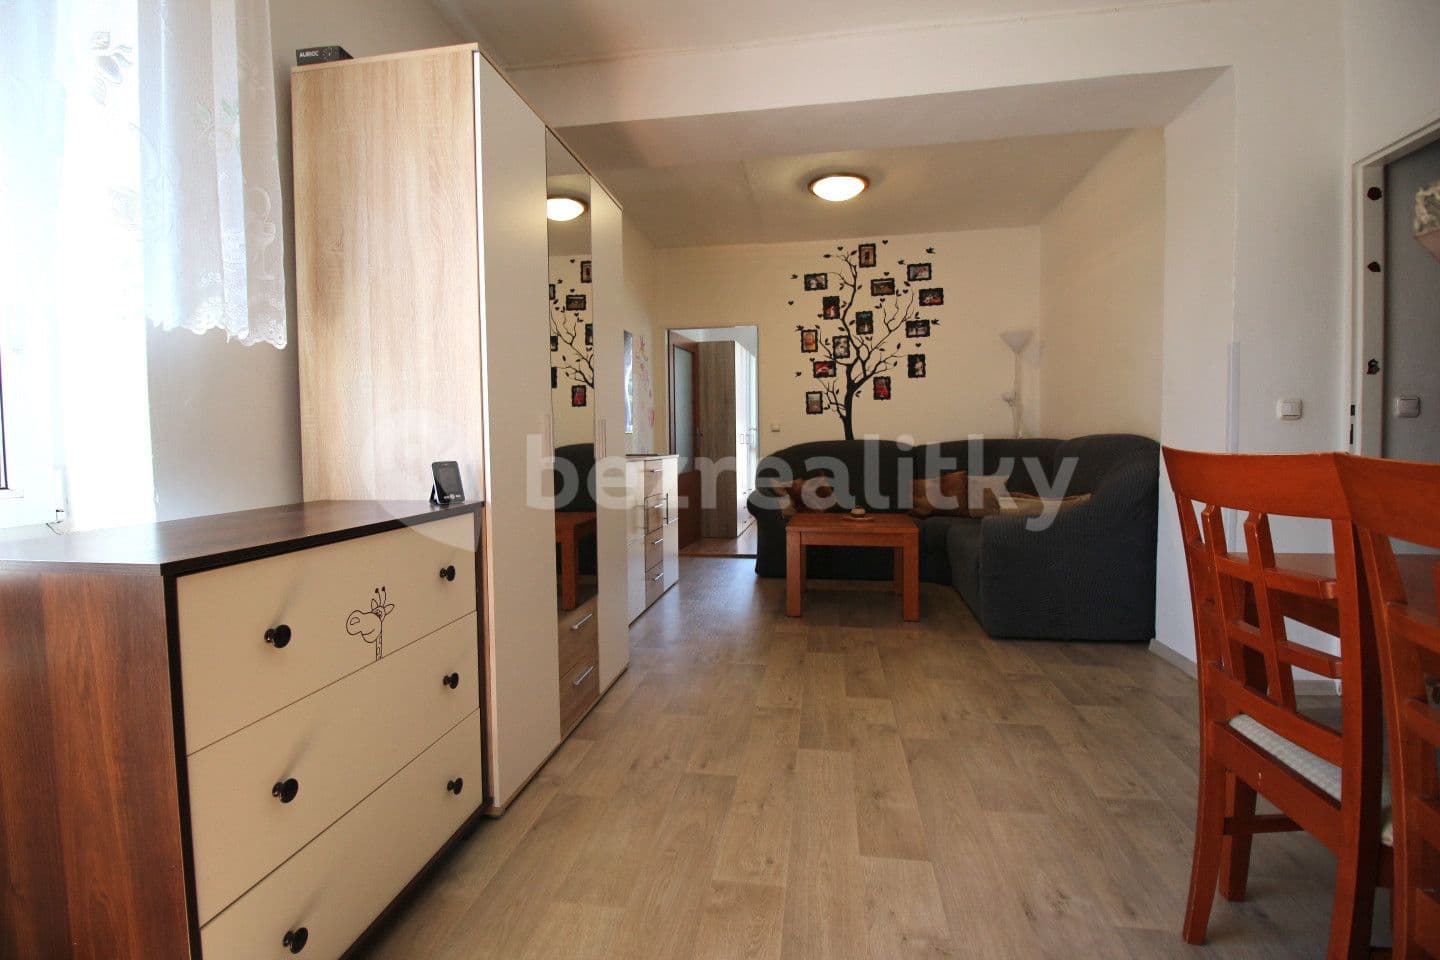 2 bedroom with open-plan kitchen flat for sale, 54 m², Drobného, Nové Město na Moravě, Vysočina Region